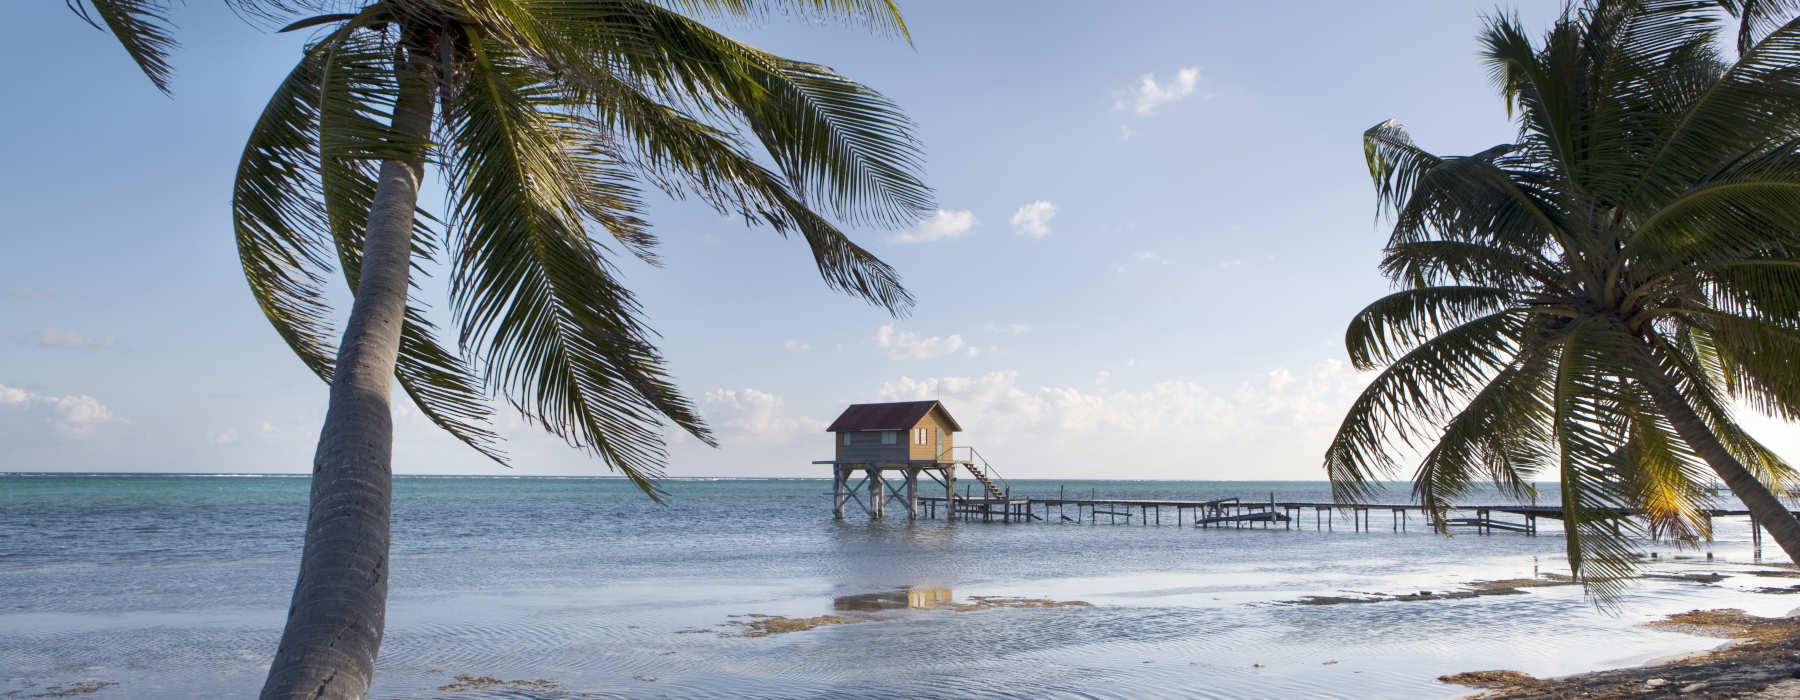 Belize<br class="hidden-md hidden-lg" /> Luxury Holidays